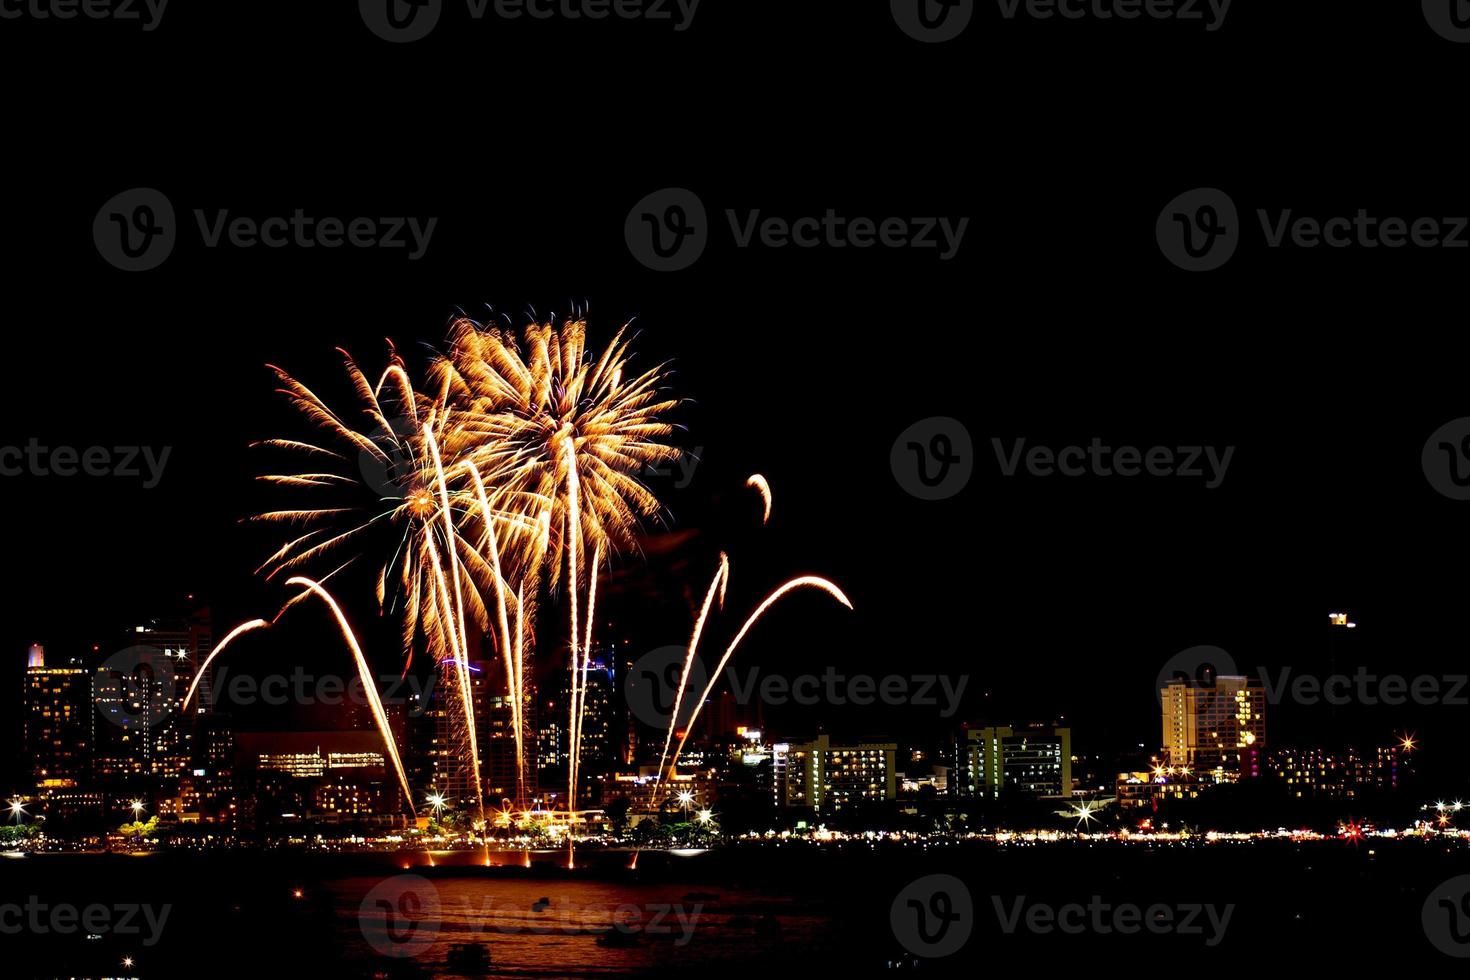 Viele blinkende Feuerwerke mit Nachtstadtbildhintergrund feiern das neue Jahr. foto